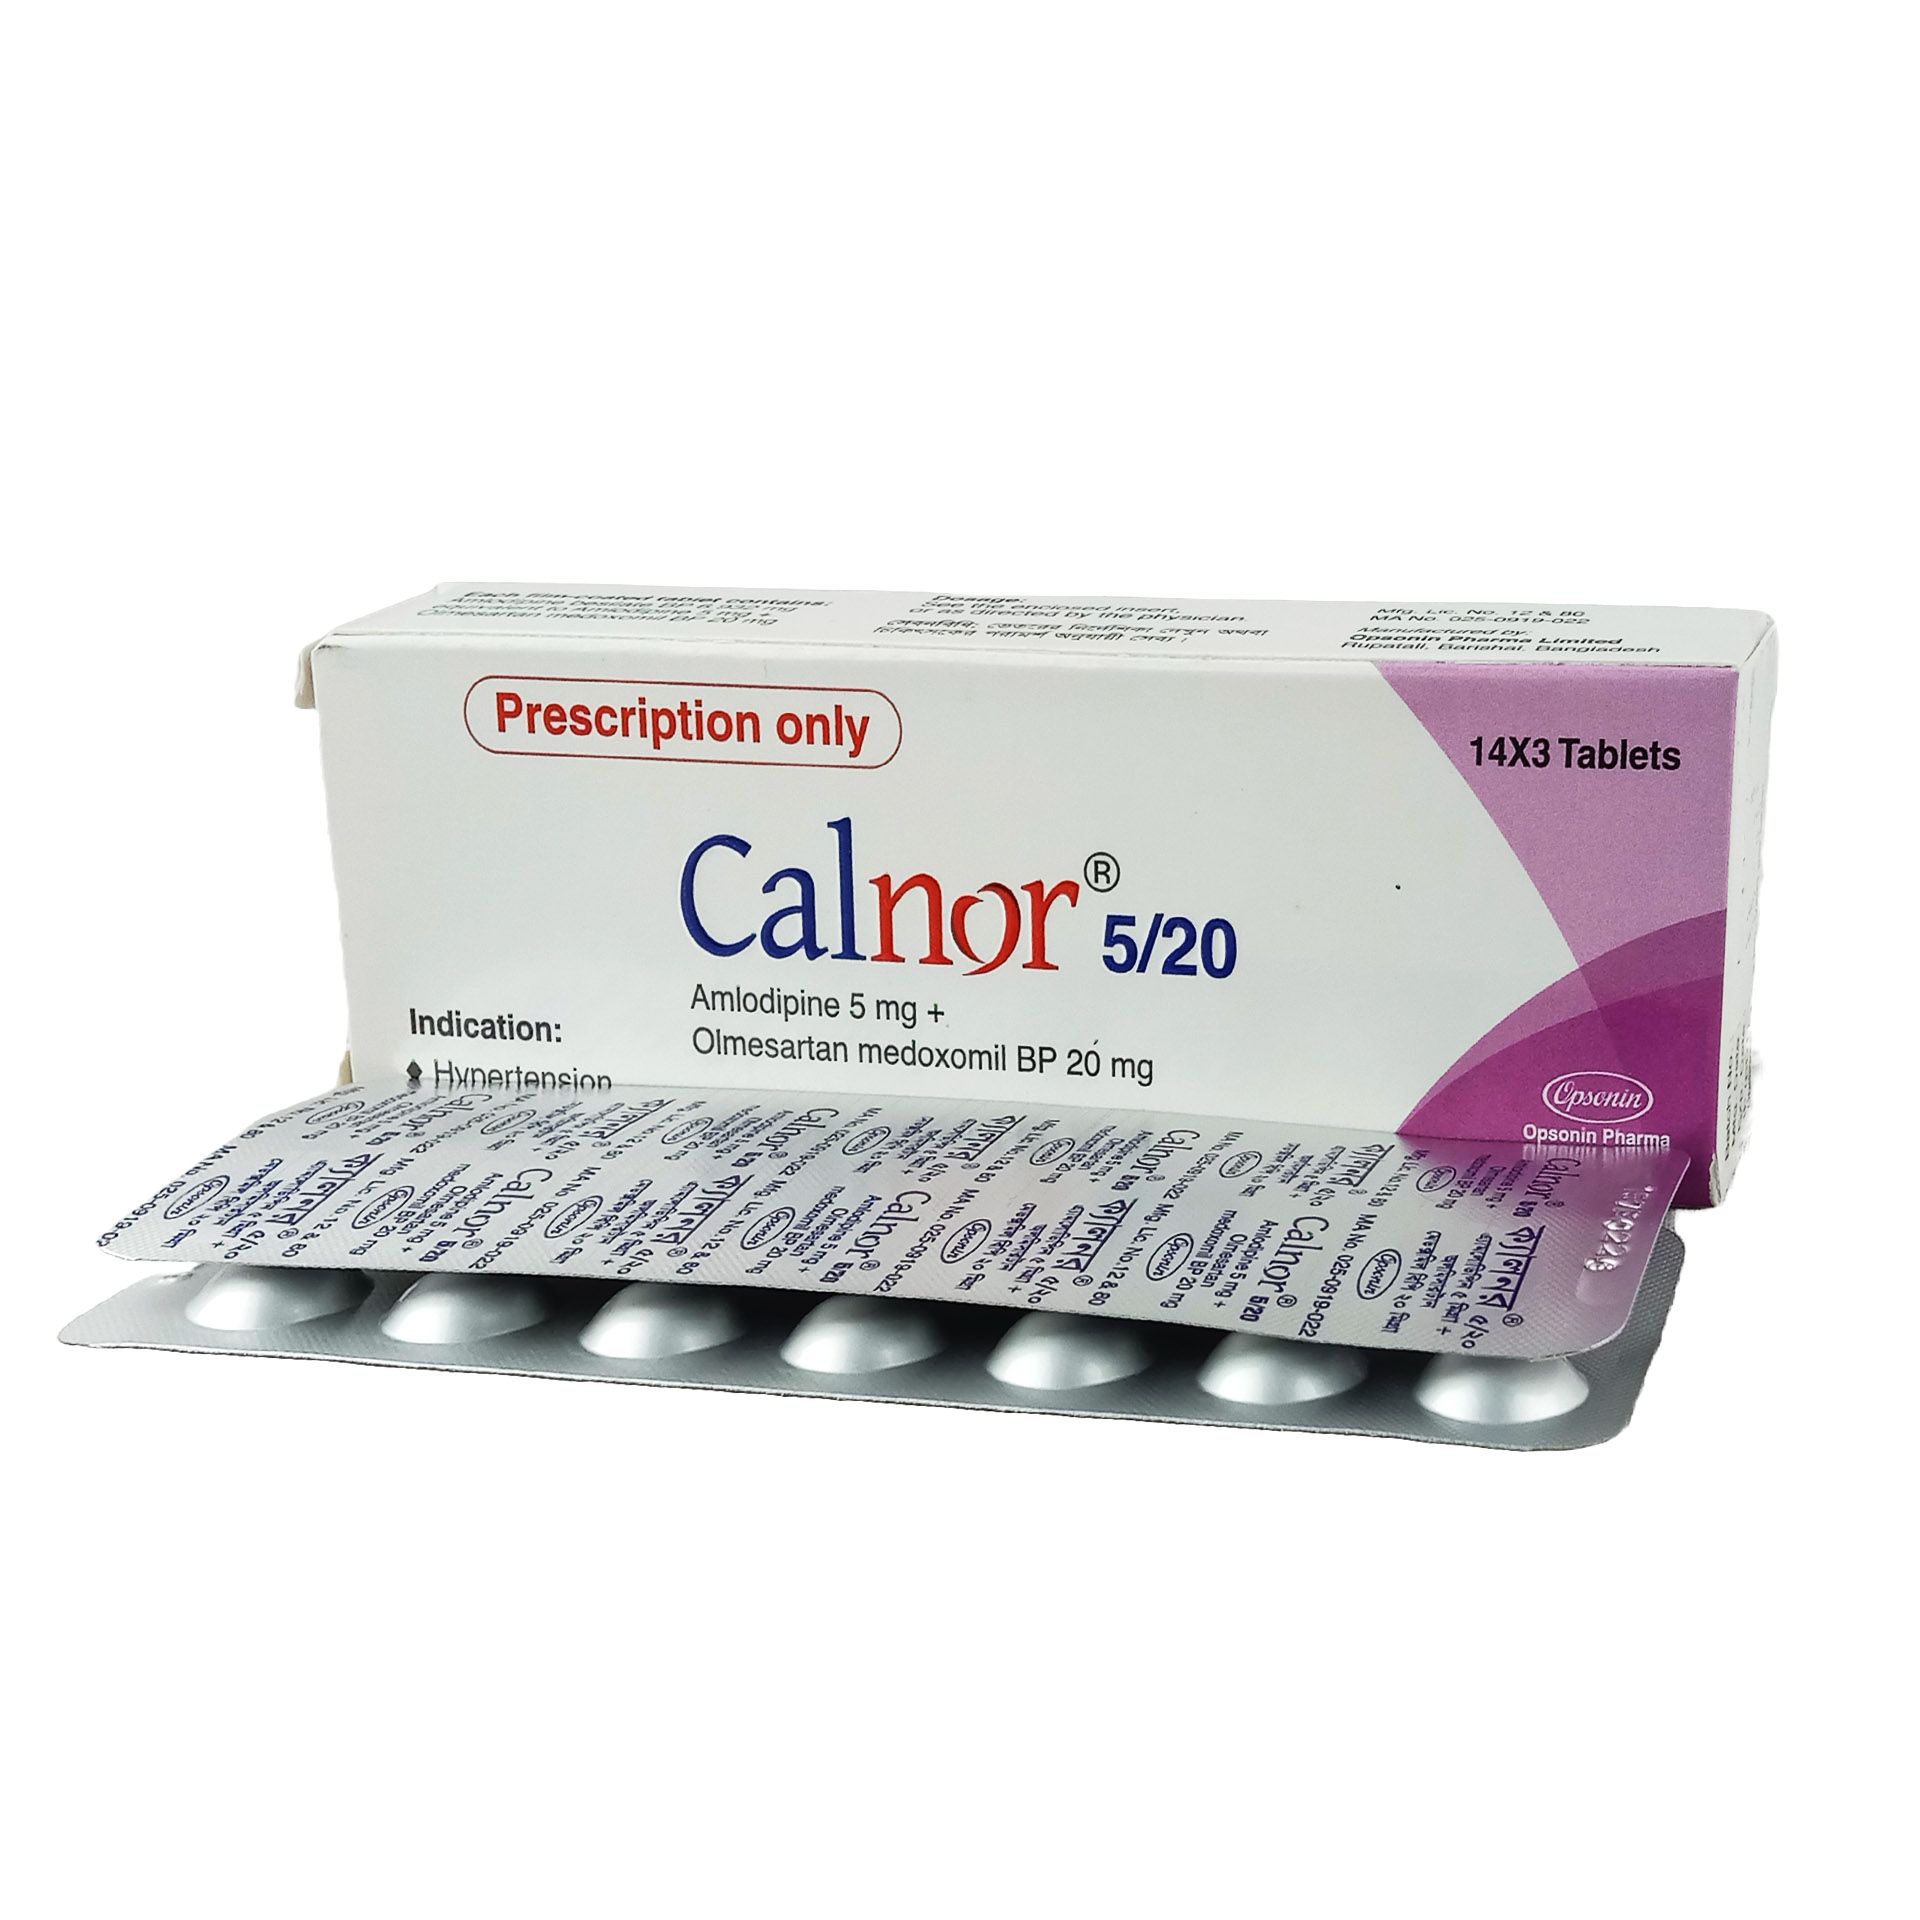 Calnor 5/20 5mg+20mg Tablet